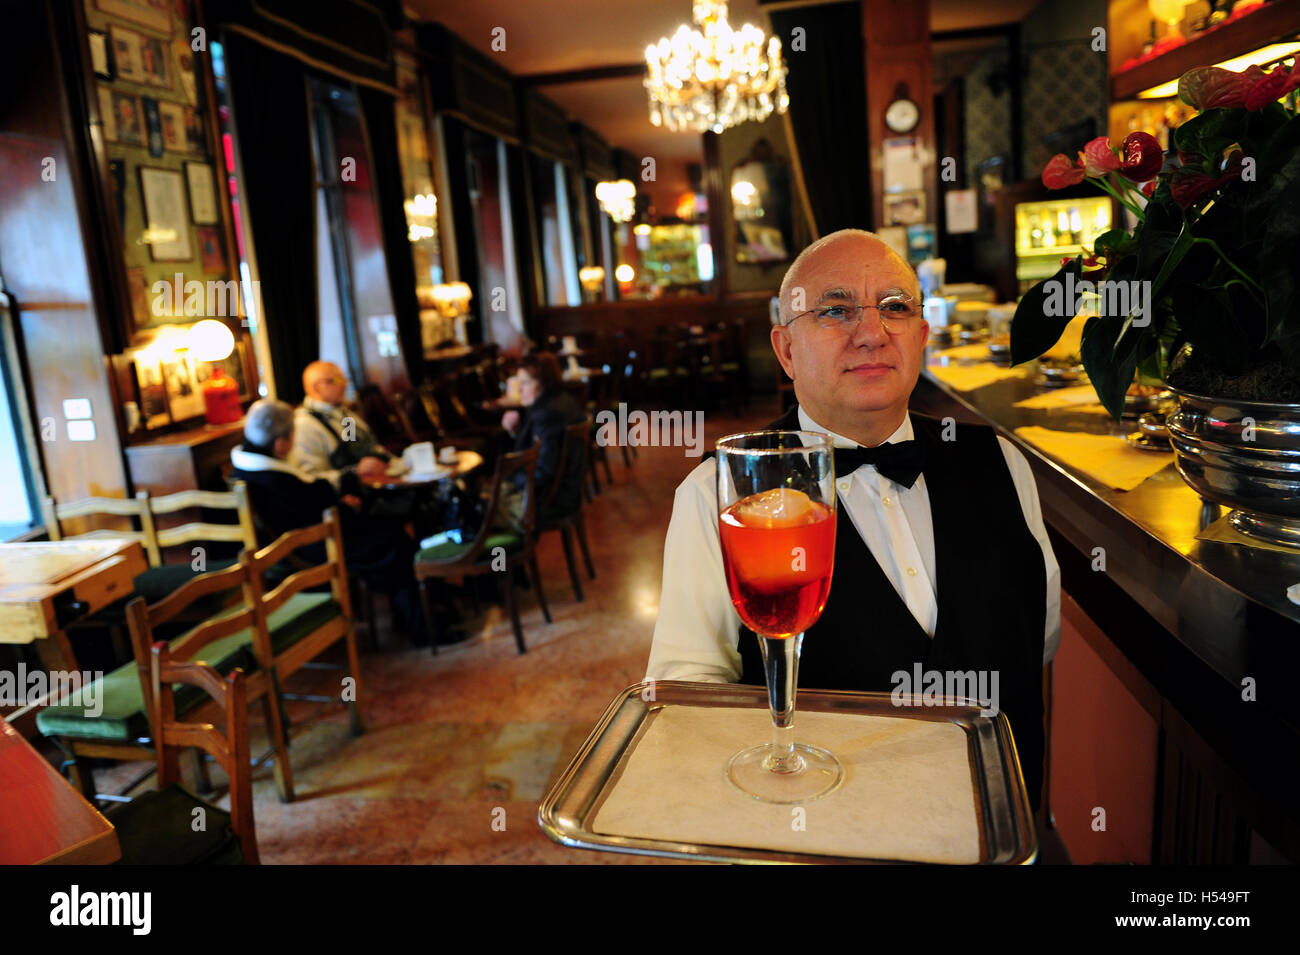 Un cameriere al bar Basso è servire il caffè marchio Negroni cocktail in vetro da 1 litro Foto Stock